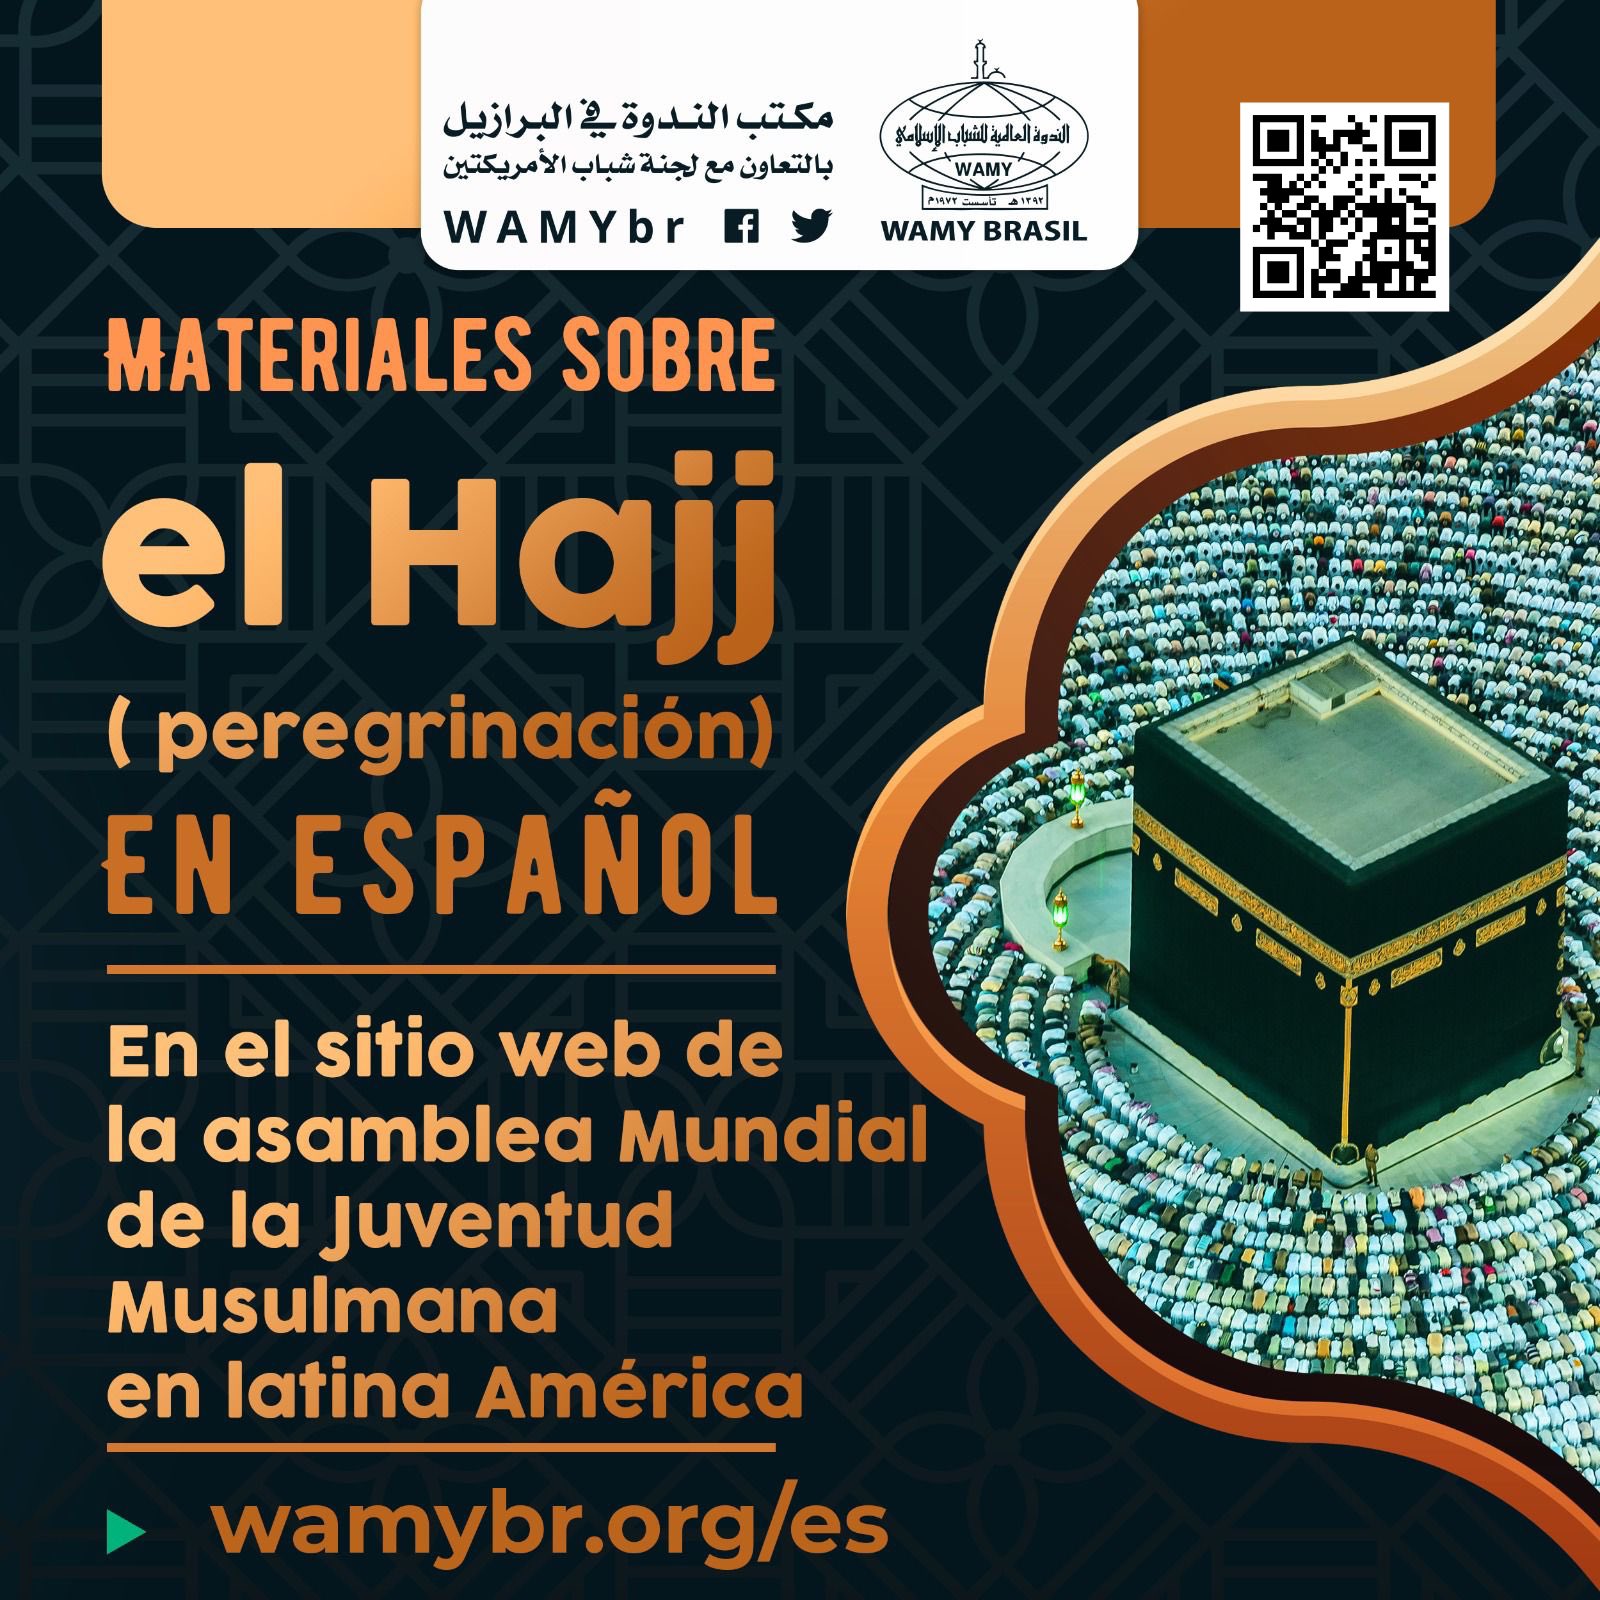 Materiales sobre el Hajj( peregrinación)  En español